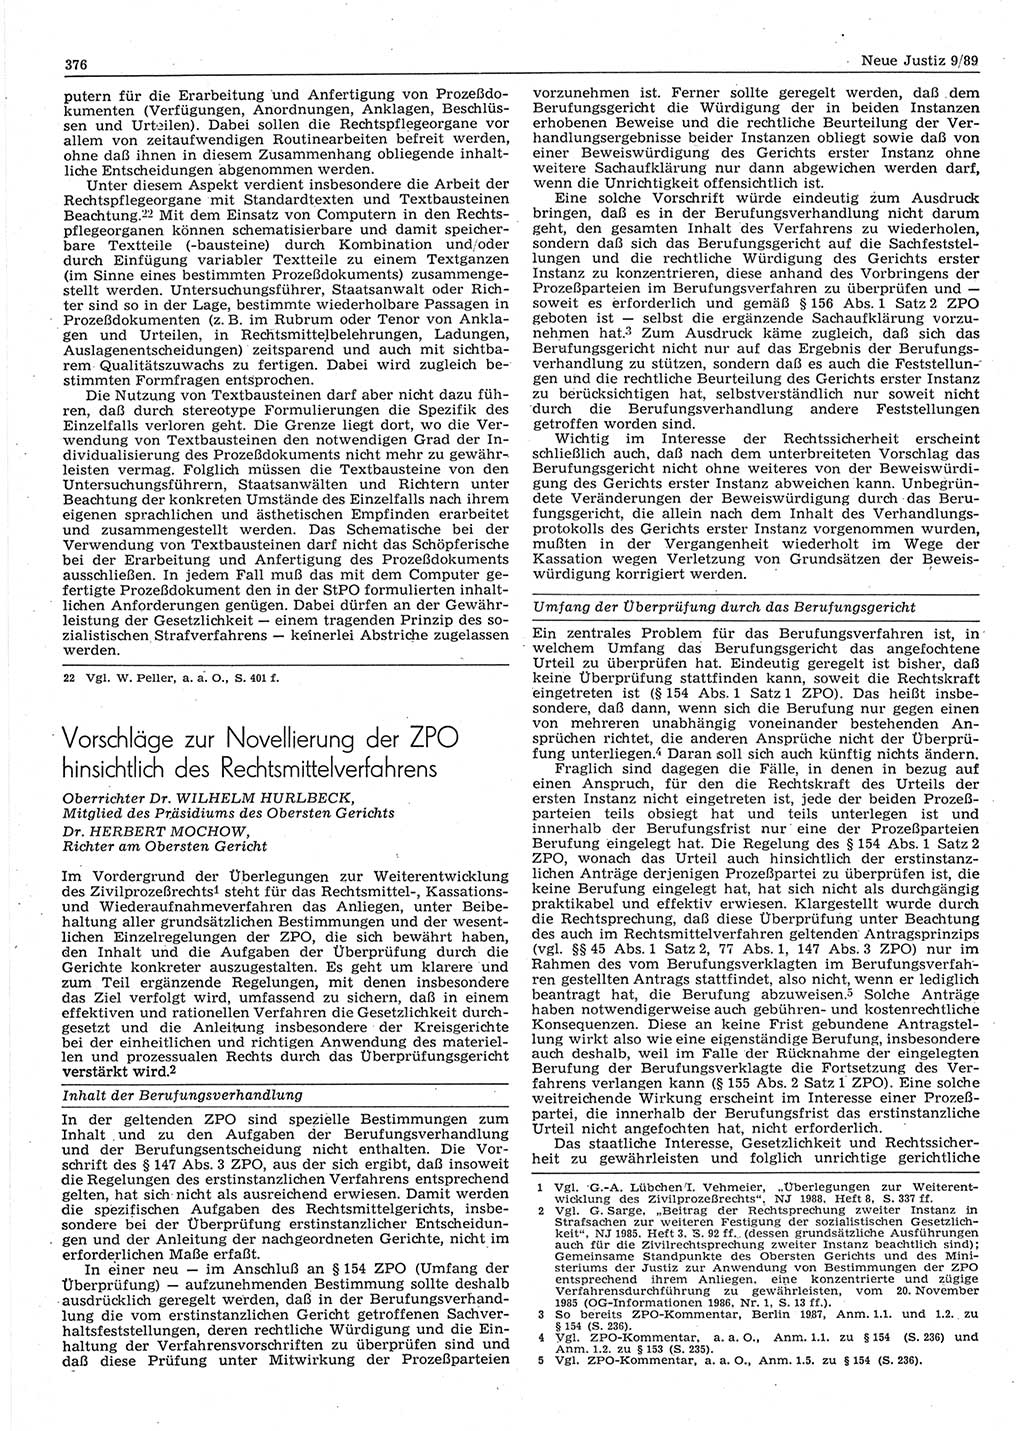 Neue Justiz (NJ), Zeitschrift für sozialistisches Recht und Gesetzlichkeit [Deutsche Demokratische Republik (DDR)], 43. Jahrgang 1989, Seite 376 (NJ DDR 1989, S. 376)